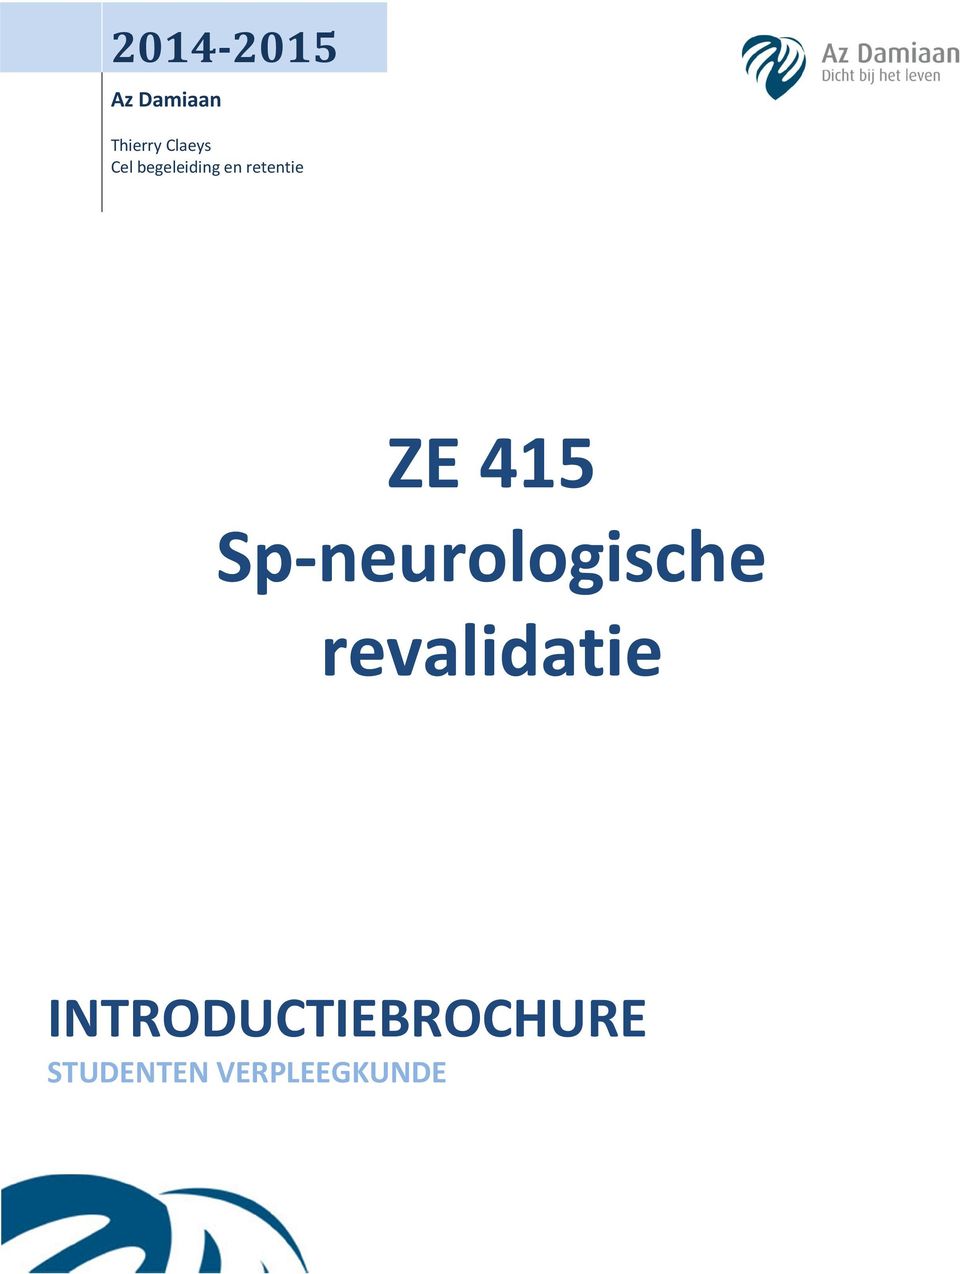 Sp-neurologische revalidatie